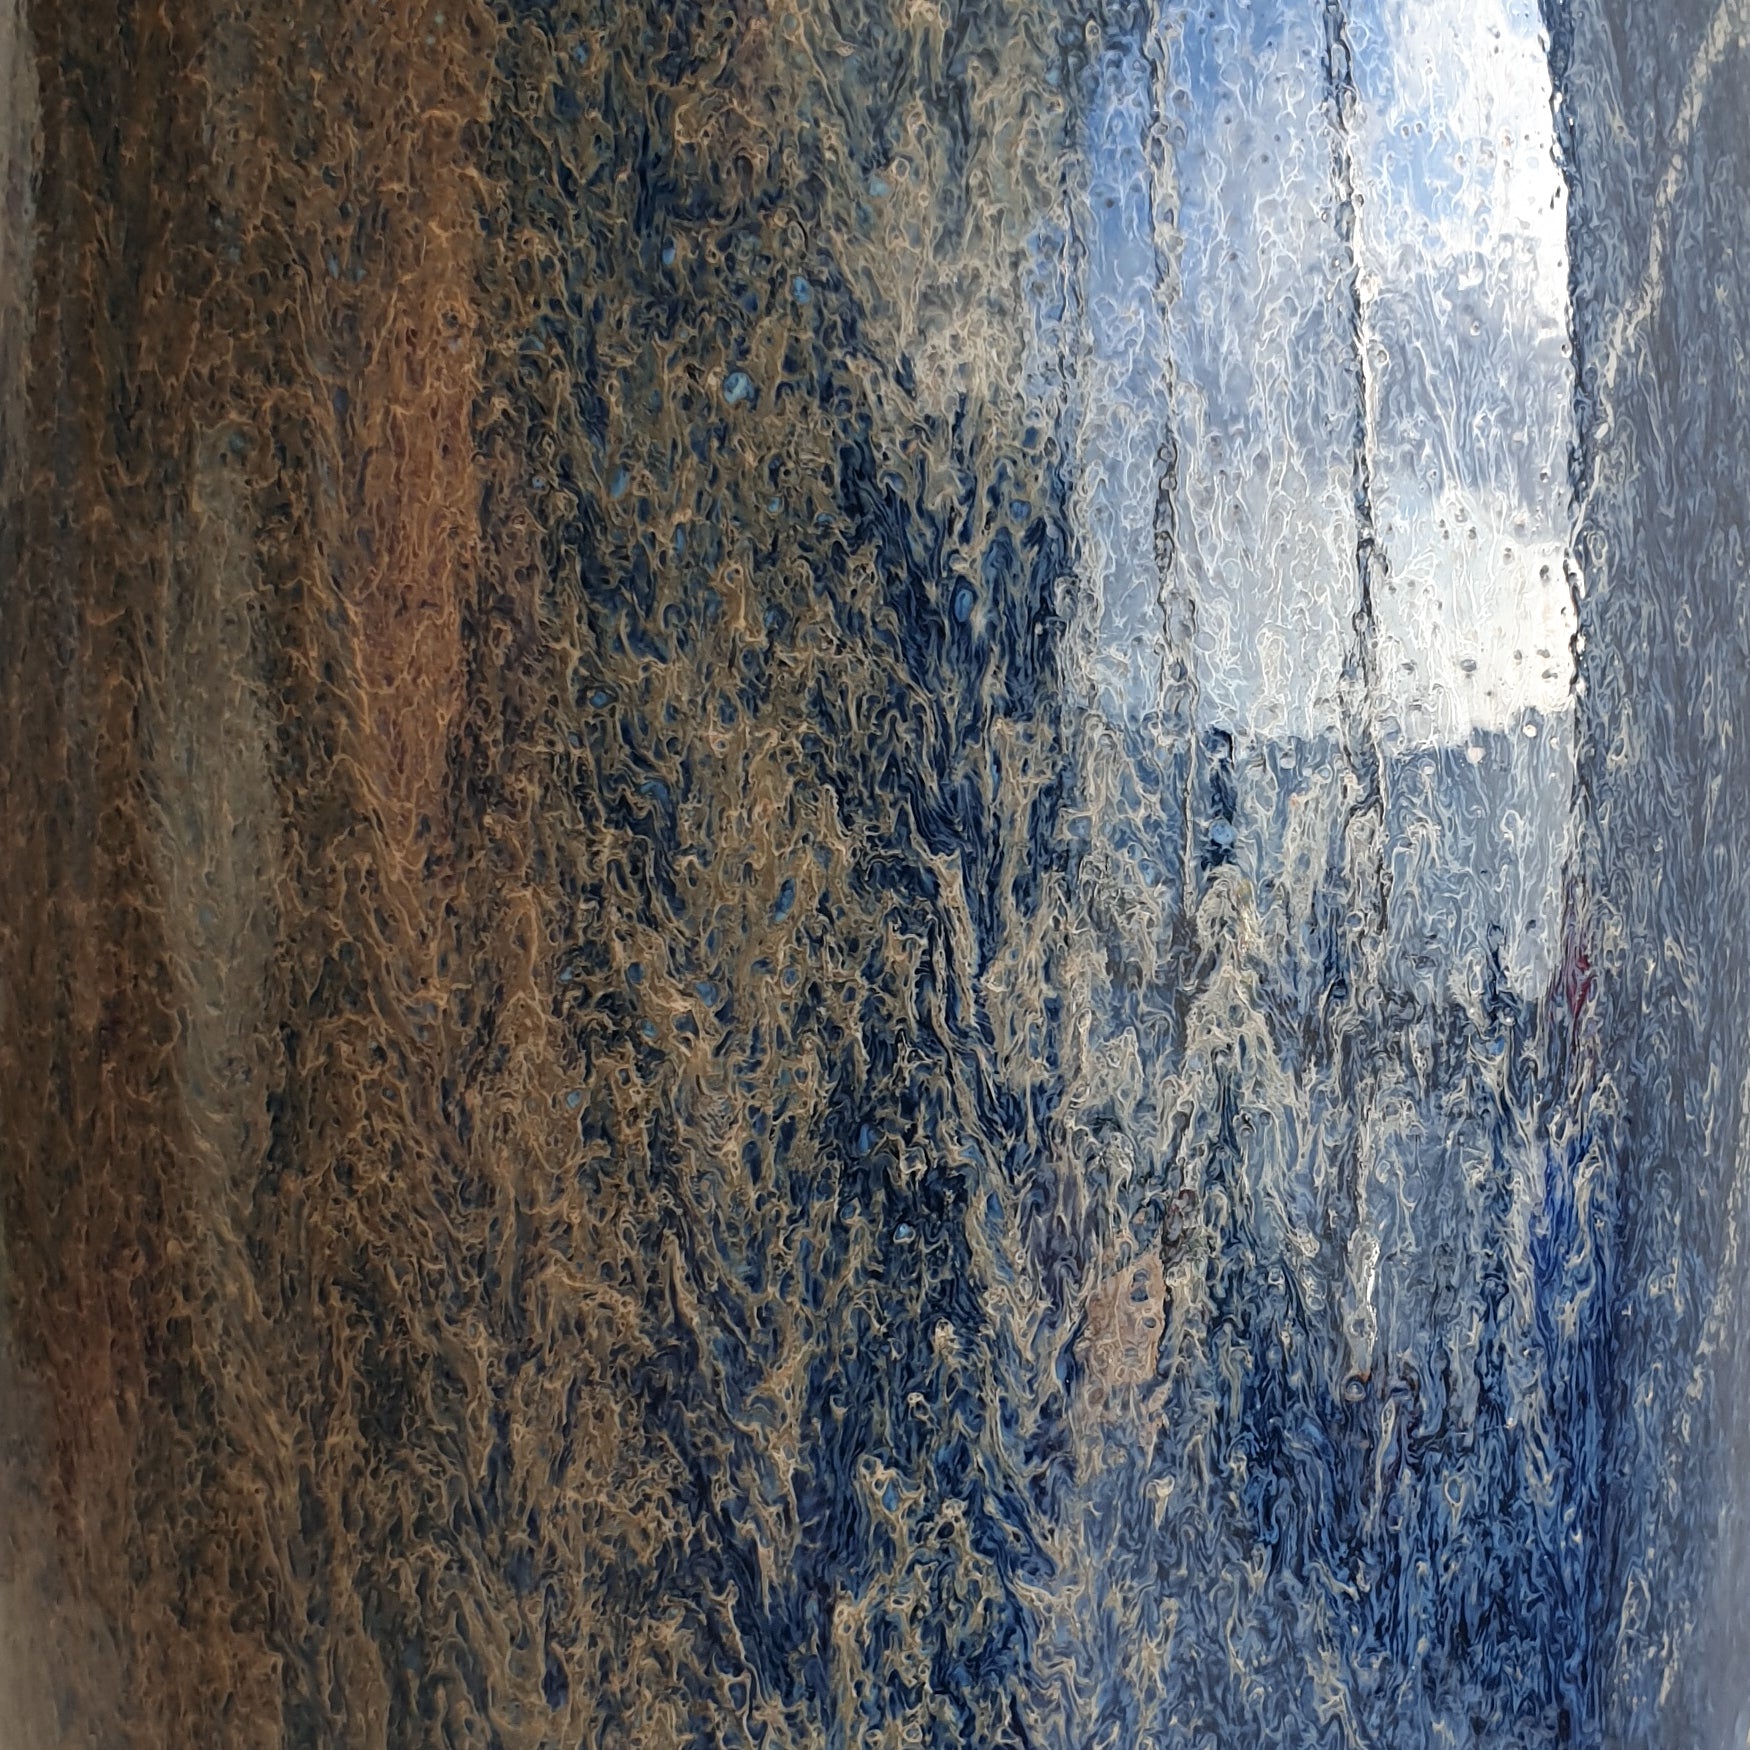 Royal Copenhagen NILS THORSSON Unique Glazed Stoneware Vase Mollaris.com 